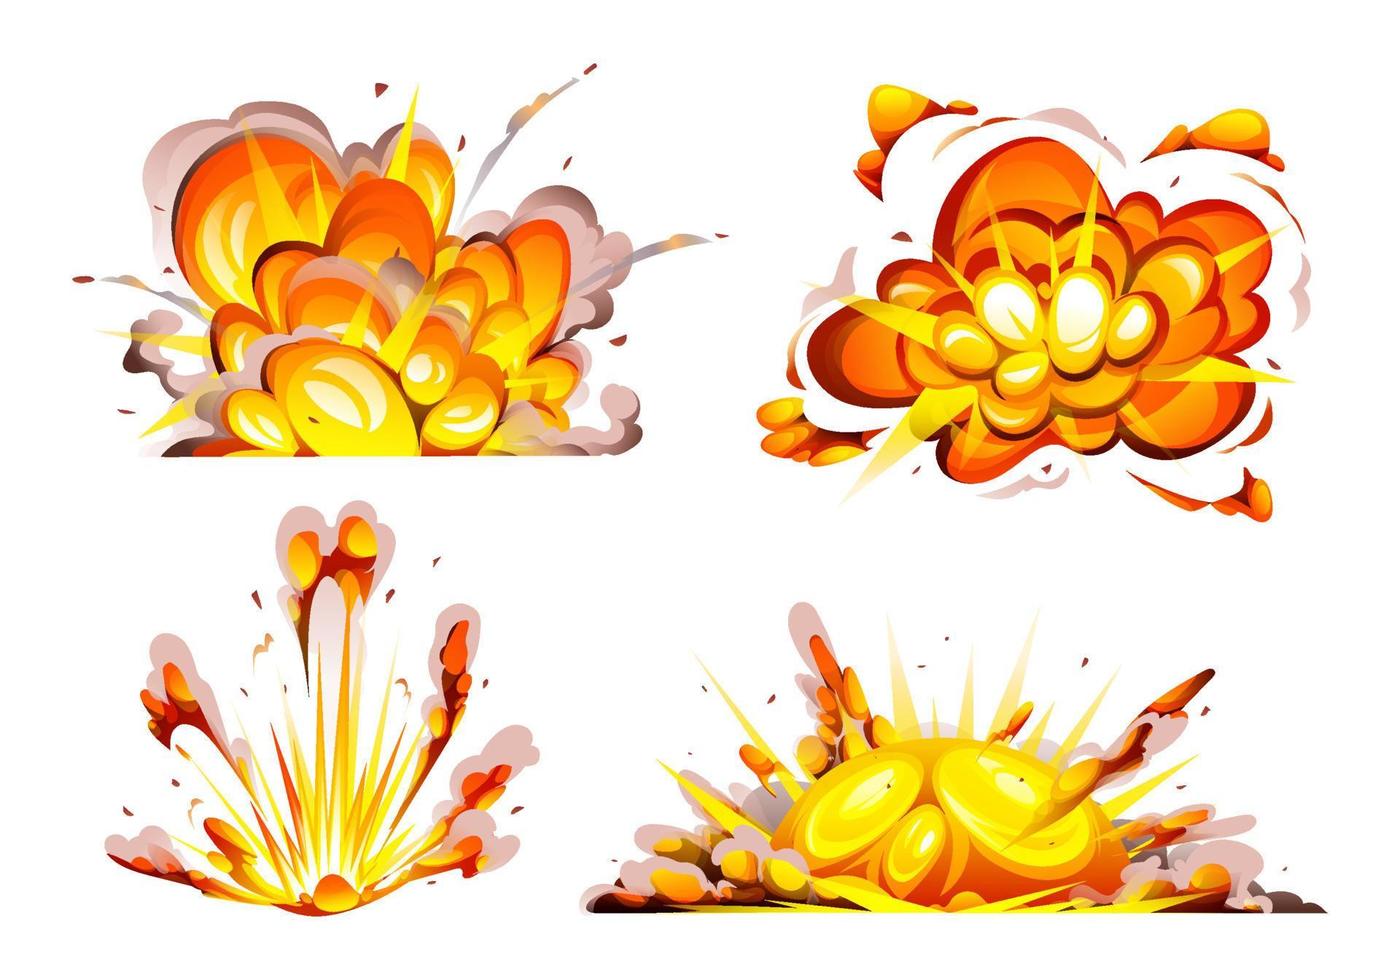 ensemble d'explosion de bombe avec illustration de dessin animé isolé de fumée, de flammes et de particules vecteur